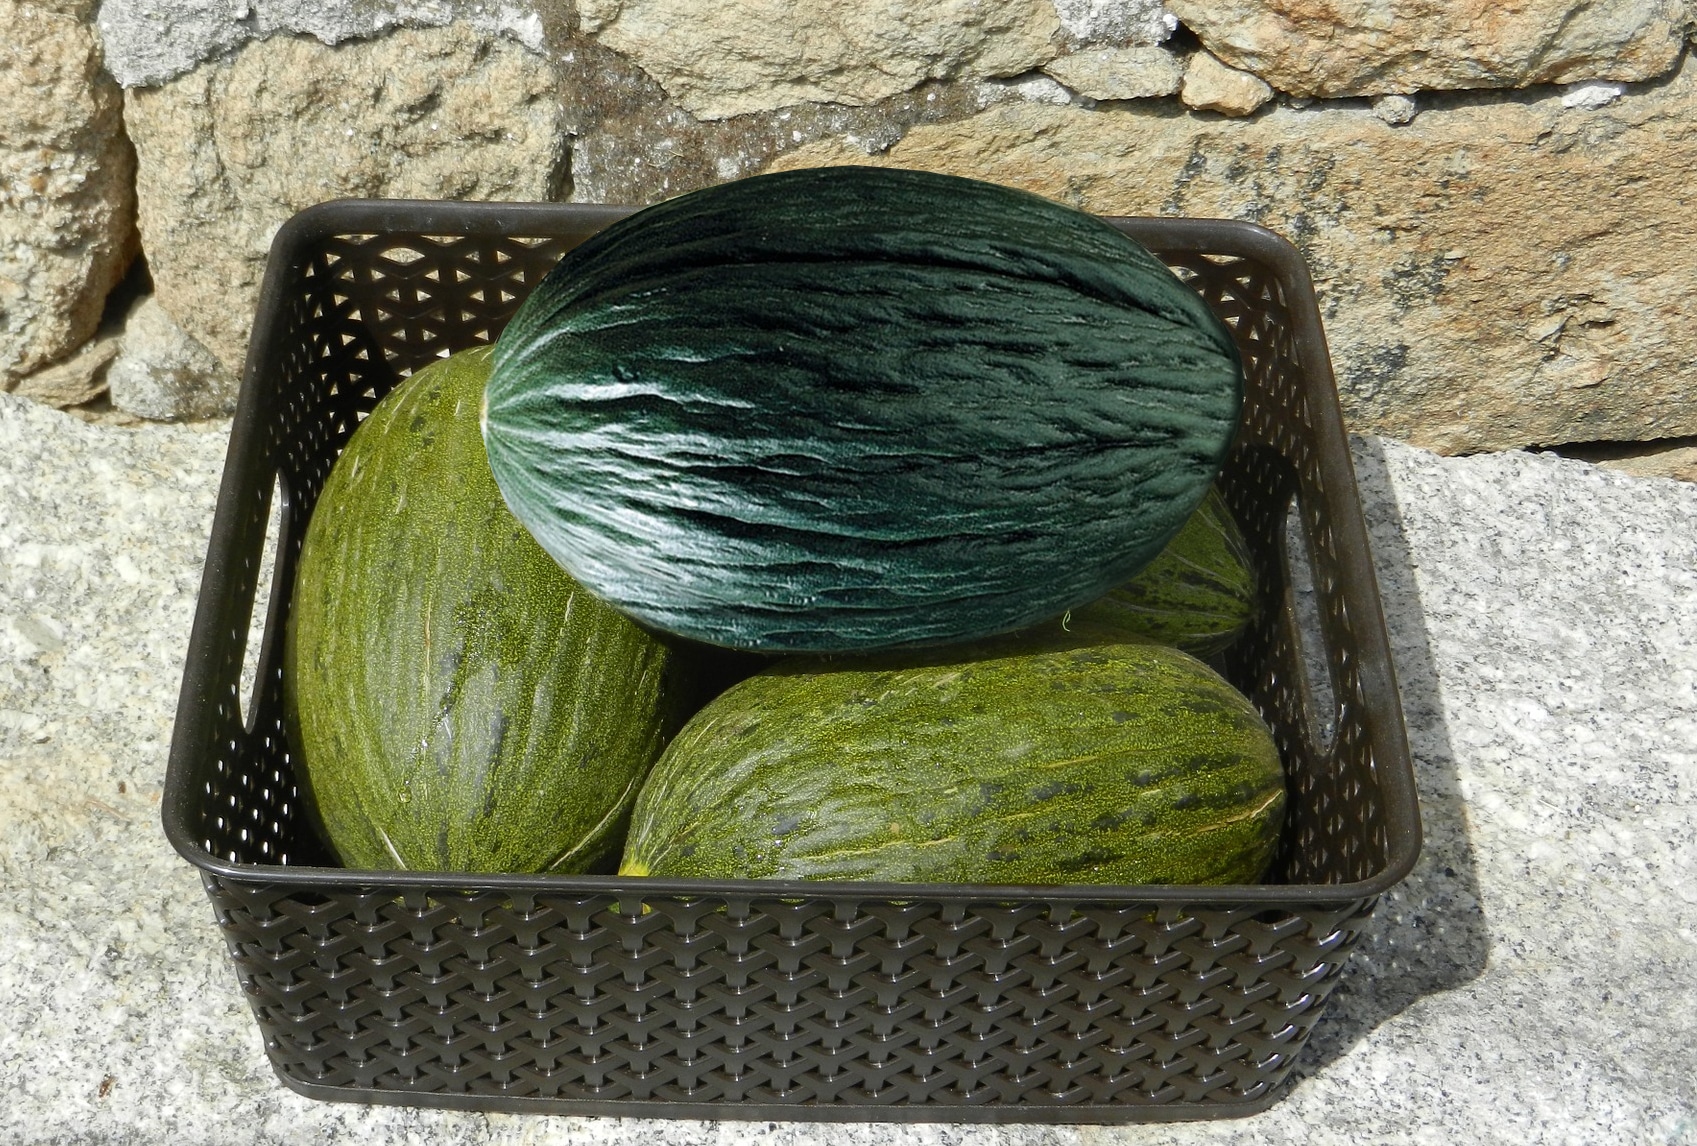 300 graines de cantaloup Boyang Melon peau verte viande verte graines de melon croustillantes graines de légumes de printemps-1000 grains pour plante de pépinière